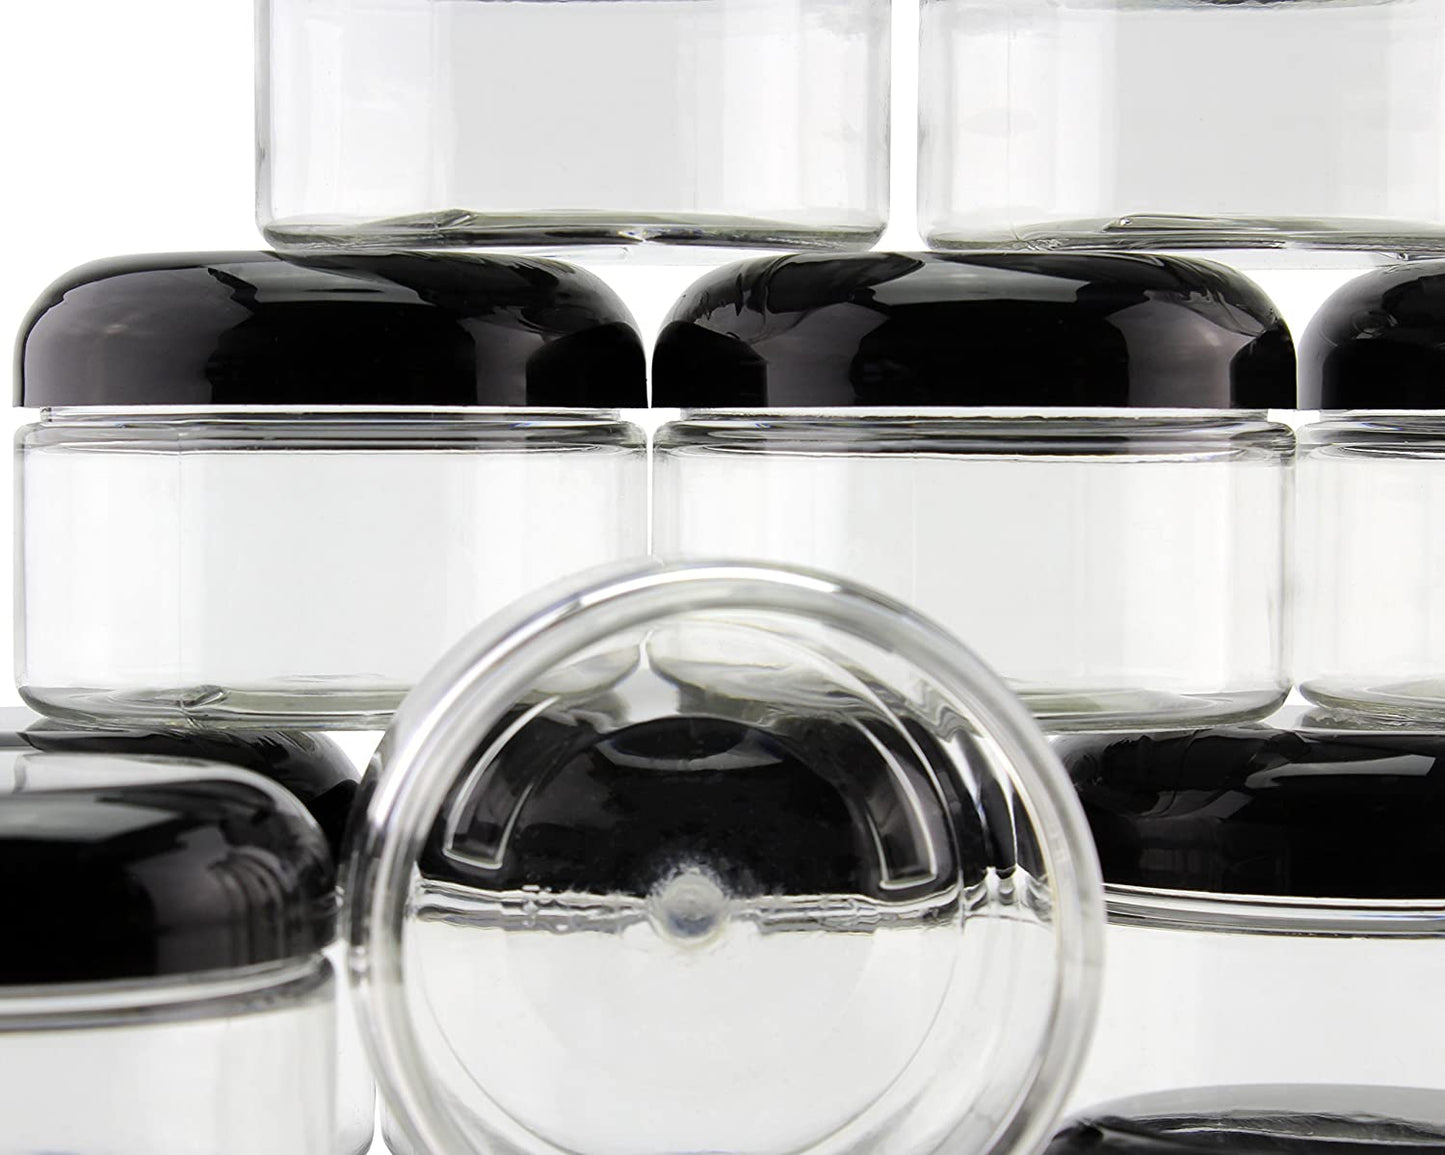 4oz Clear Plastic Jars (120-Pack) - SH_1408_BUNDLE